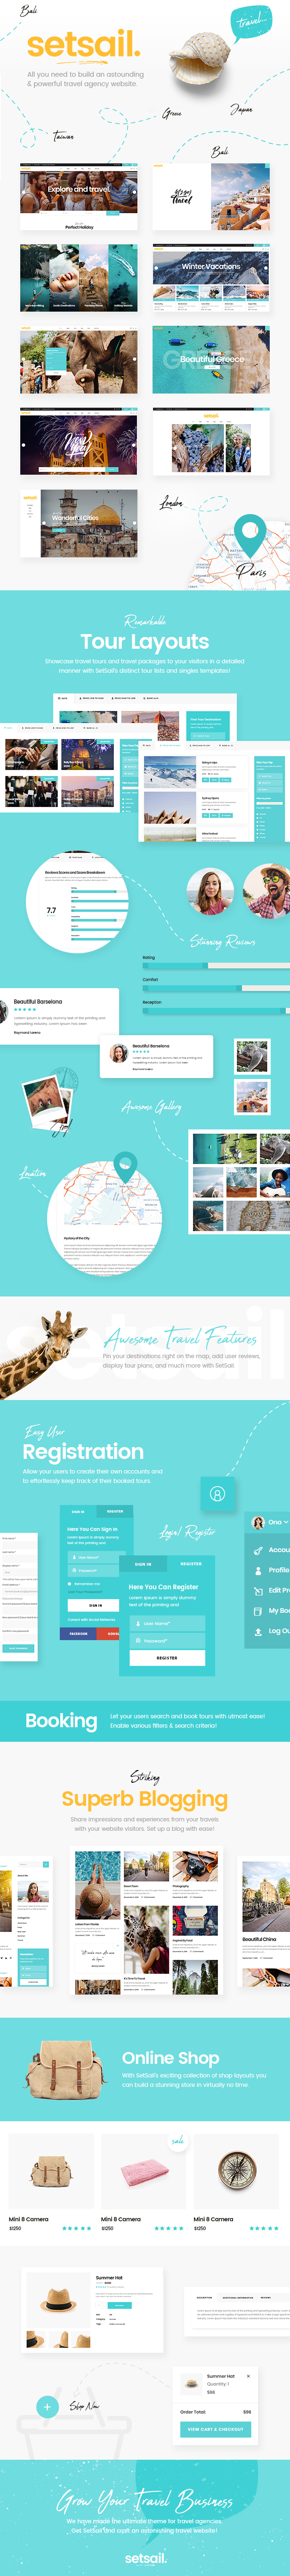 WordPress theme SetSail - Travel Agency Theme (Travel)